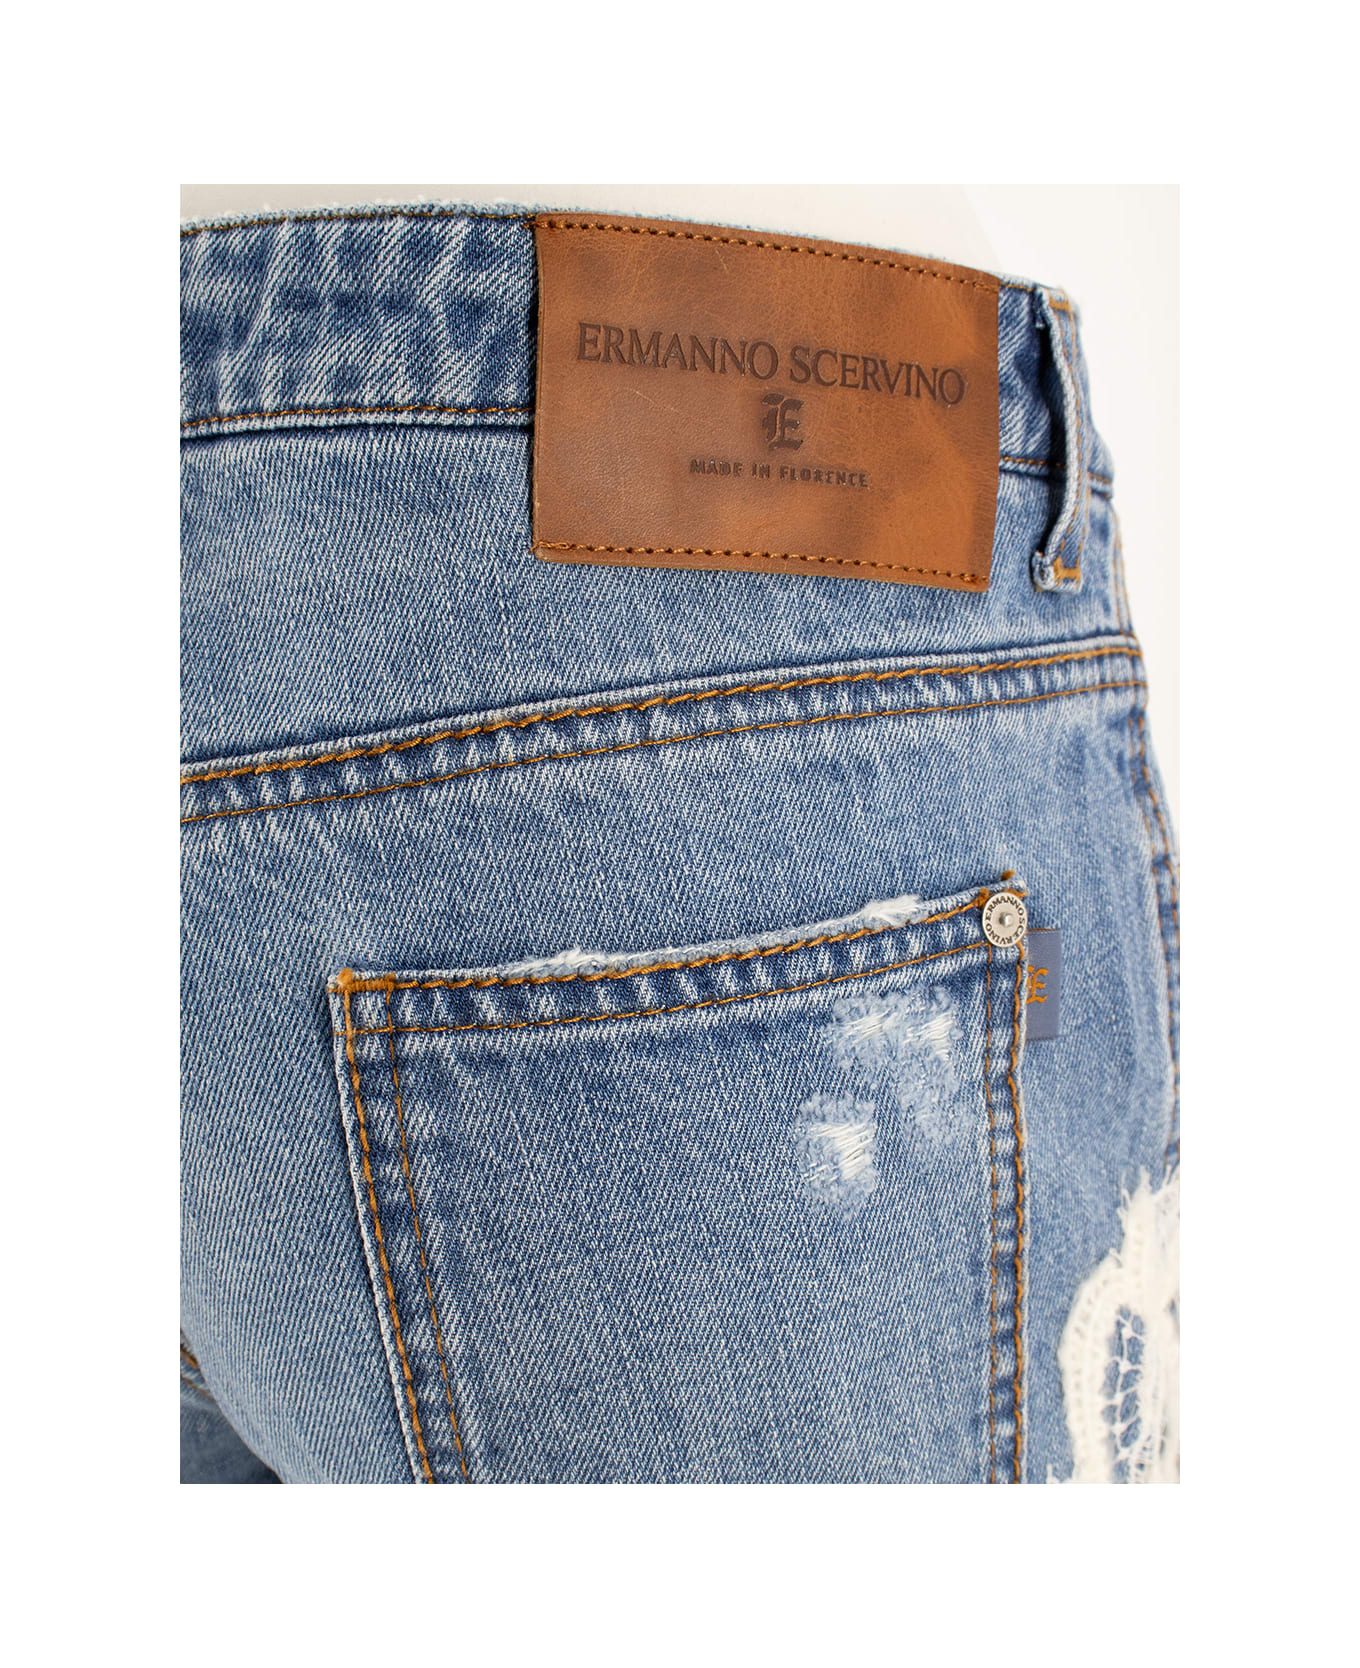 Ermanno Scervino Jeans - BRIGHT COBALT デニム